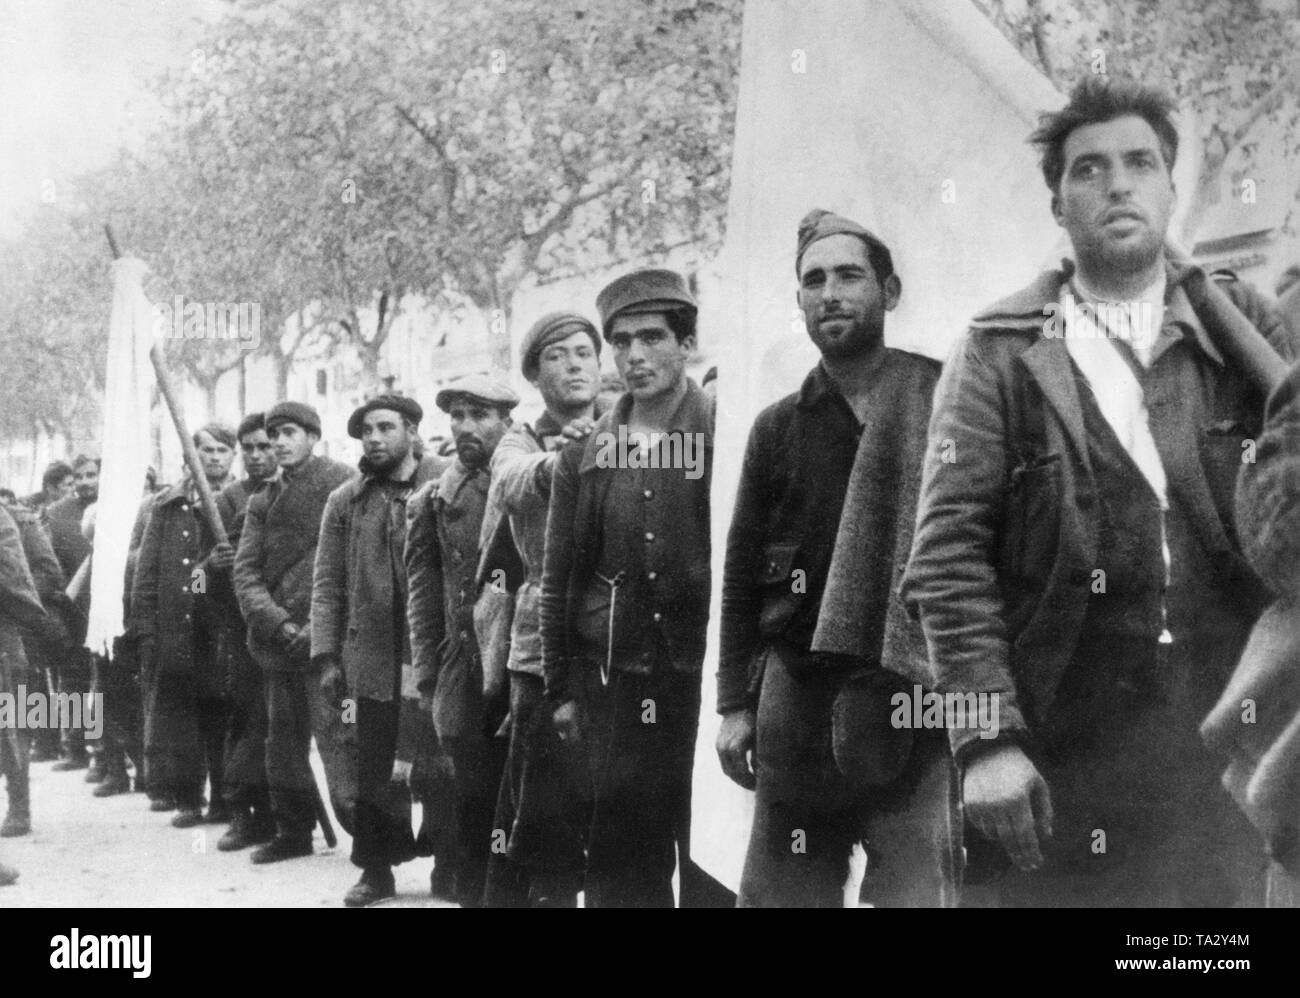 Foto von einer Gruppe von republikanischen Soldaten mit weißen Fahnen auf der Straße Rambla Nuova in Tarragona, Katalonien, Spanien, am 26. Januar 1939 (drei Monate vor dem Ende des Spanischen Bürgerkrieges). Stockfoto